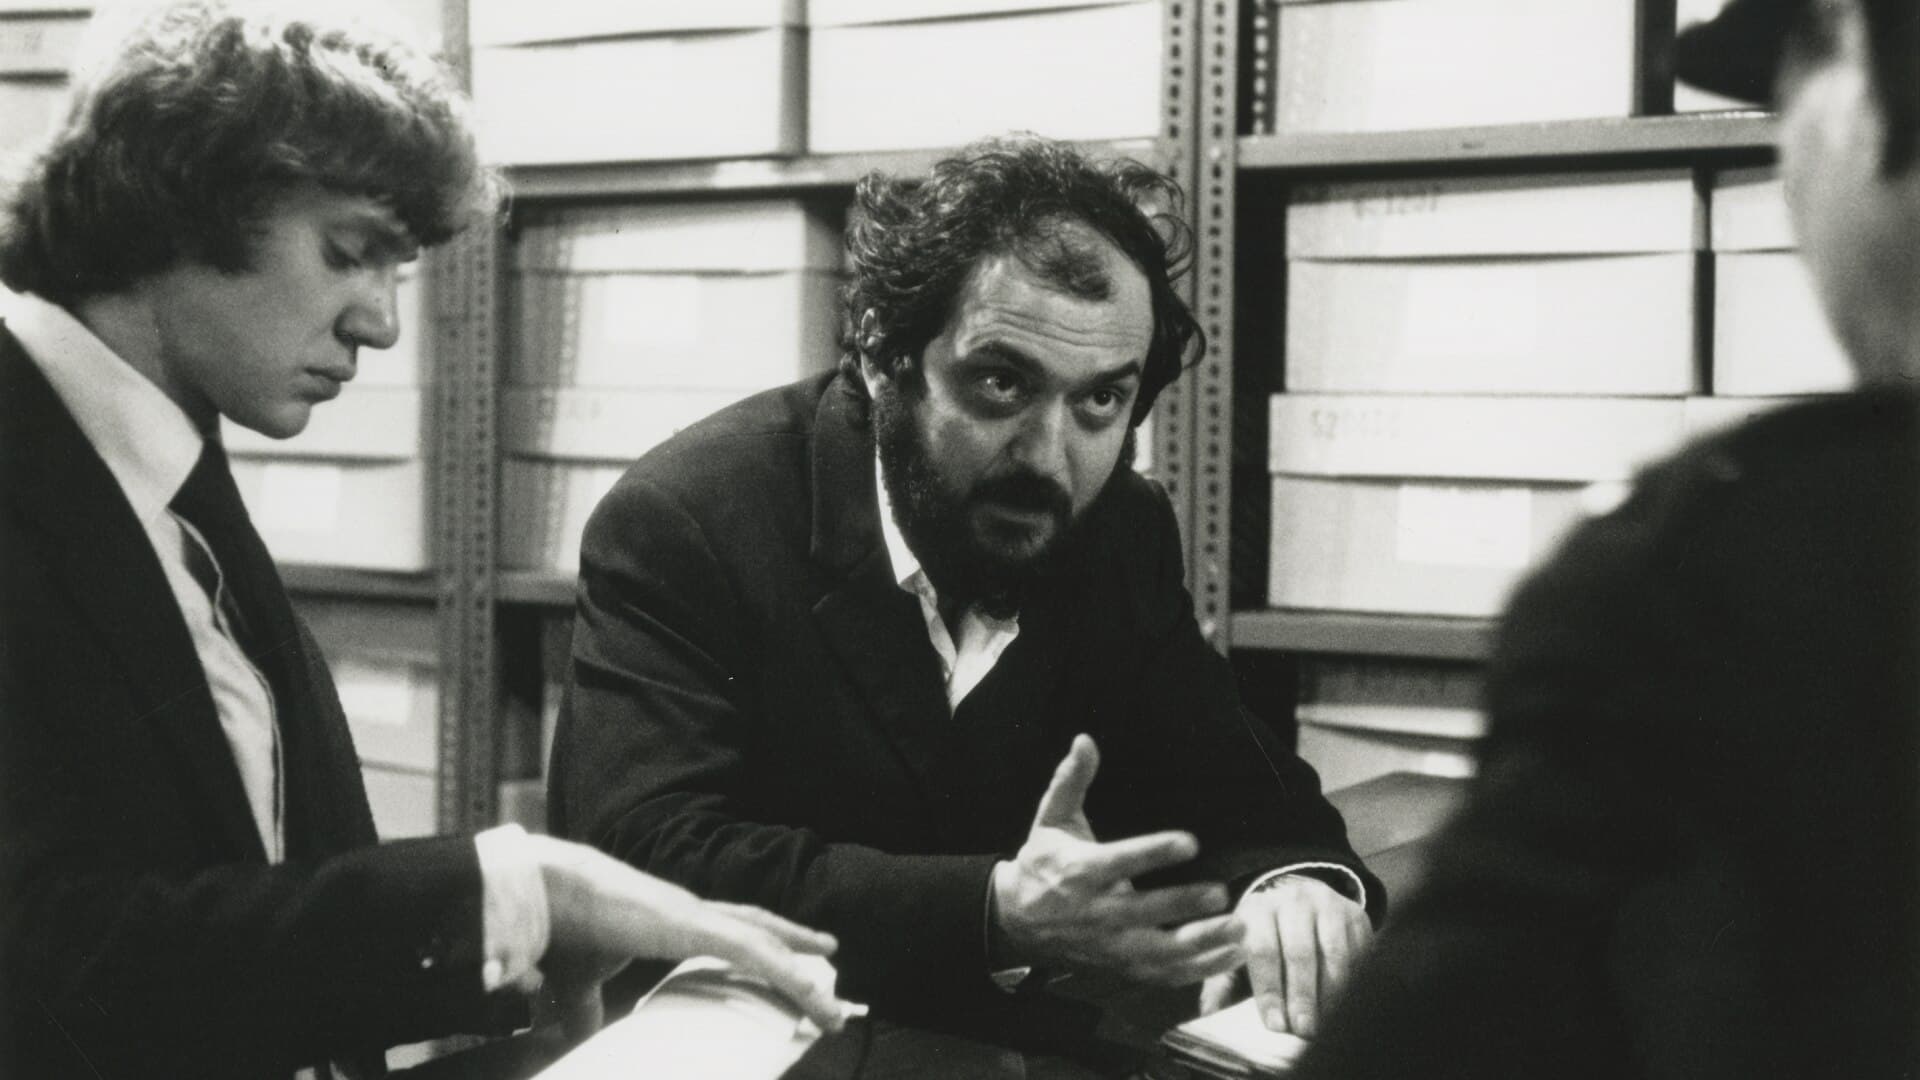 Kubrick by Kubrick (2020)